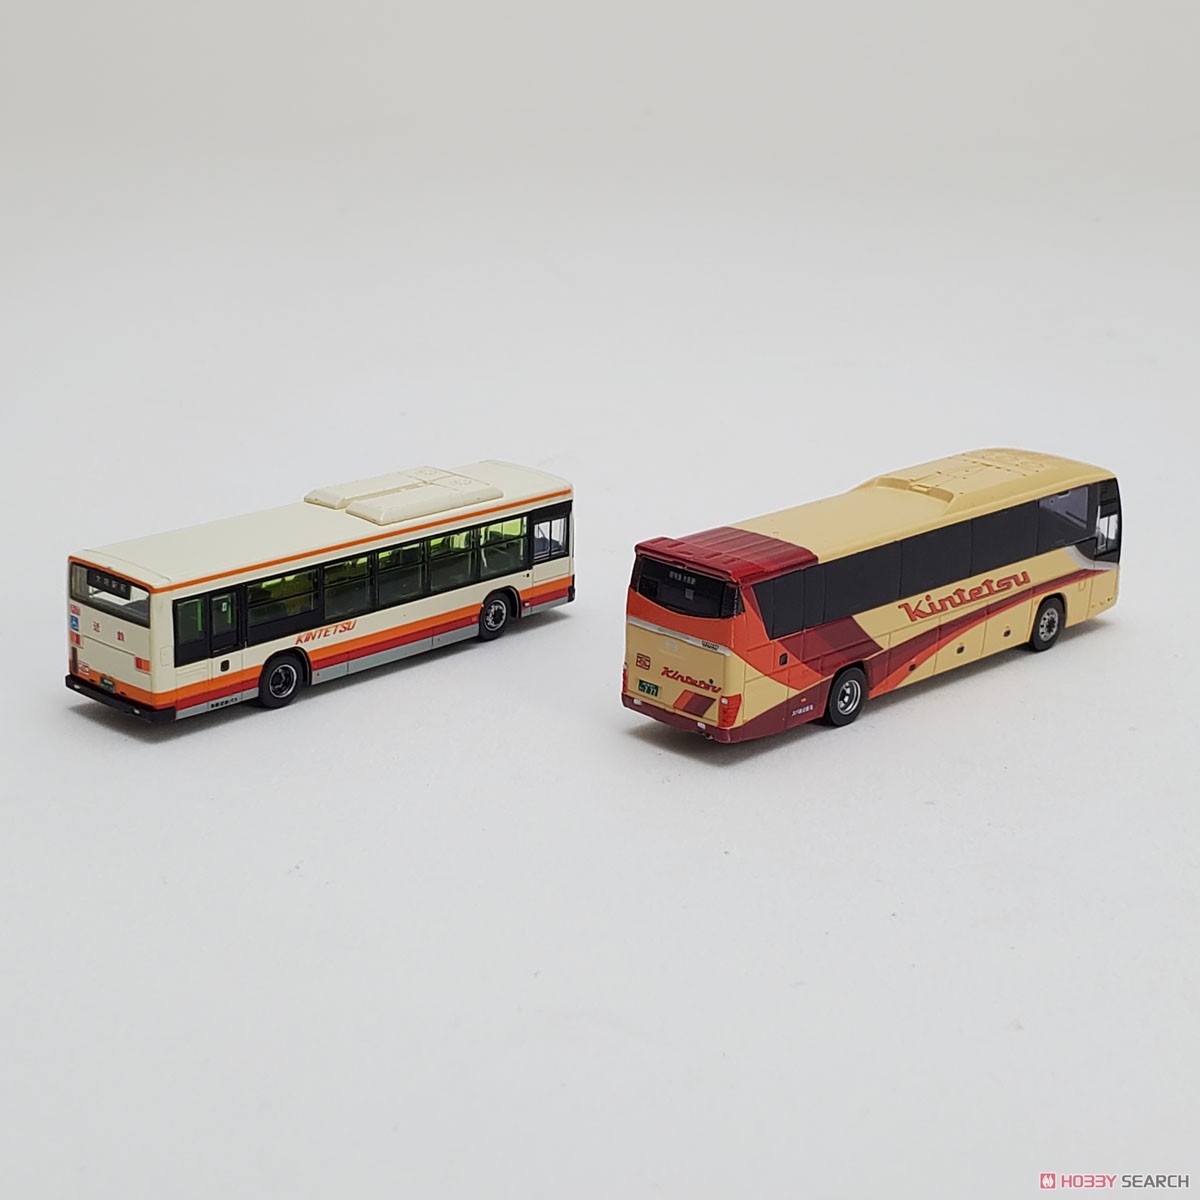 ザ・バスコレクション 名阪近鉄バス2台セット (2台セット) (鉄道模型) 商品画像10